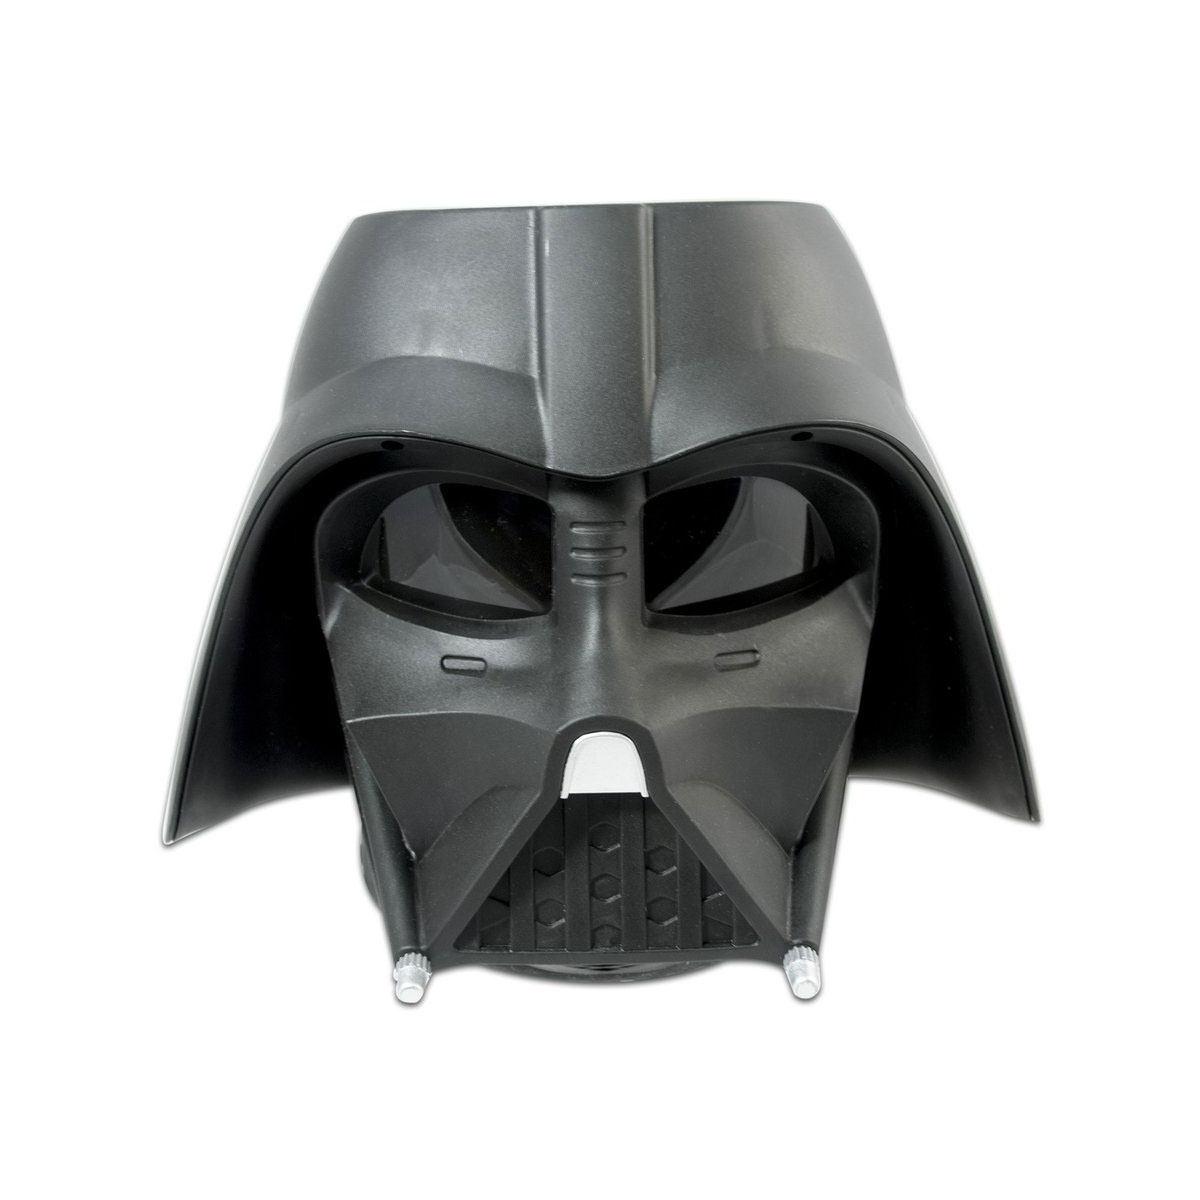 Critique du grille-pain Star Wars Darth Vader : que le côté obscur